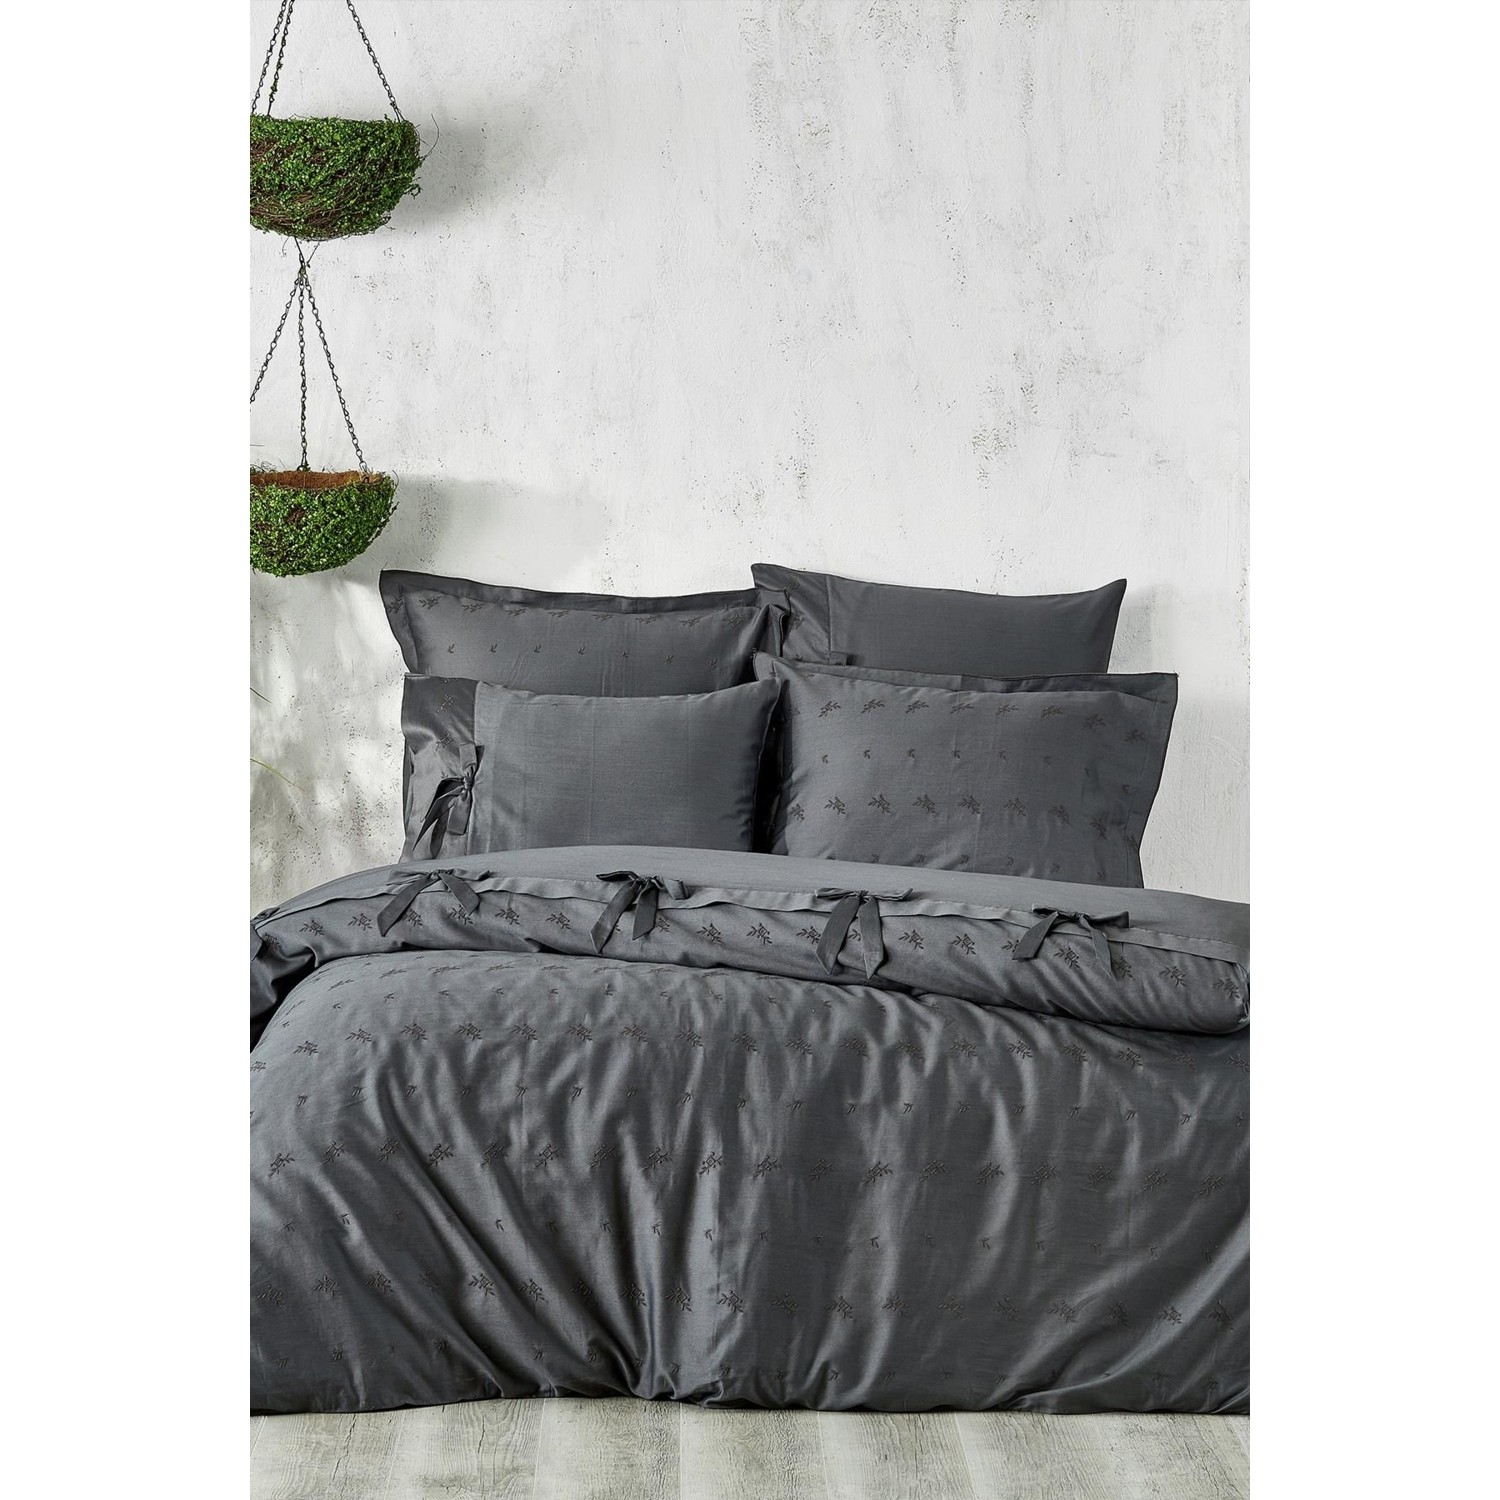 Комплект постельного белья Carmen King Size из экокотона, 100% органический хлопок, атлас, антрацит, 220X240 см